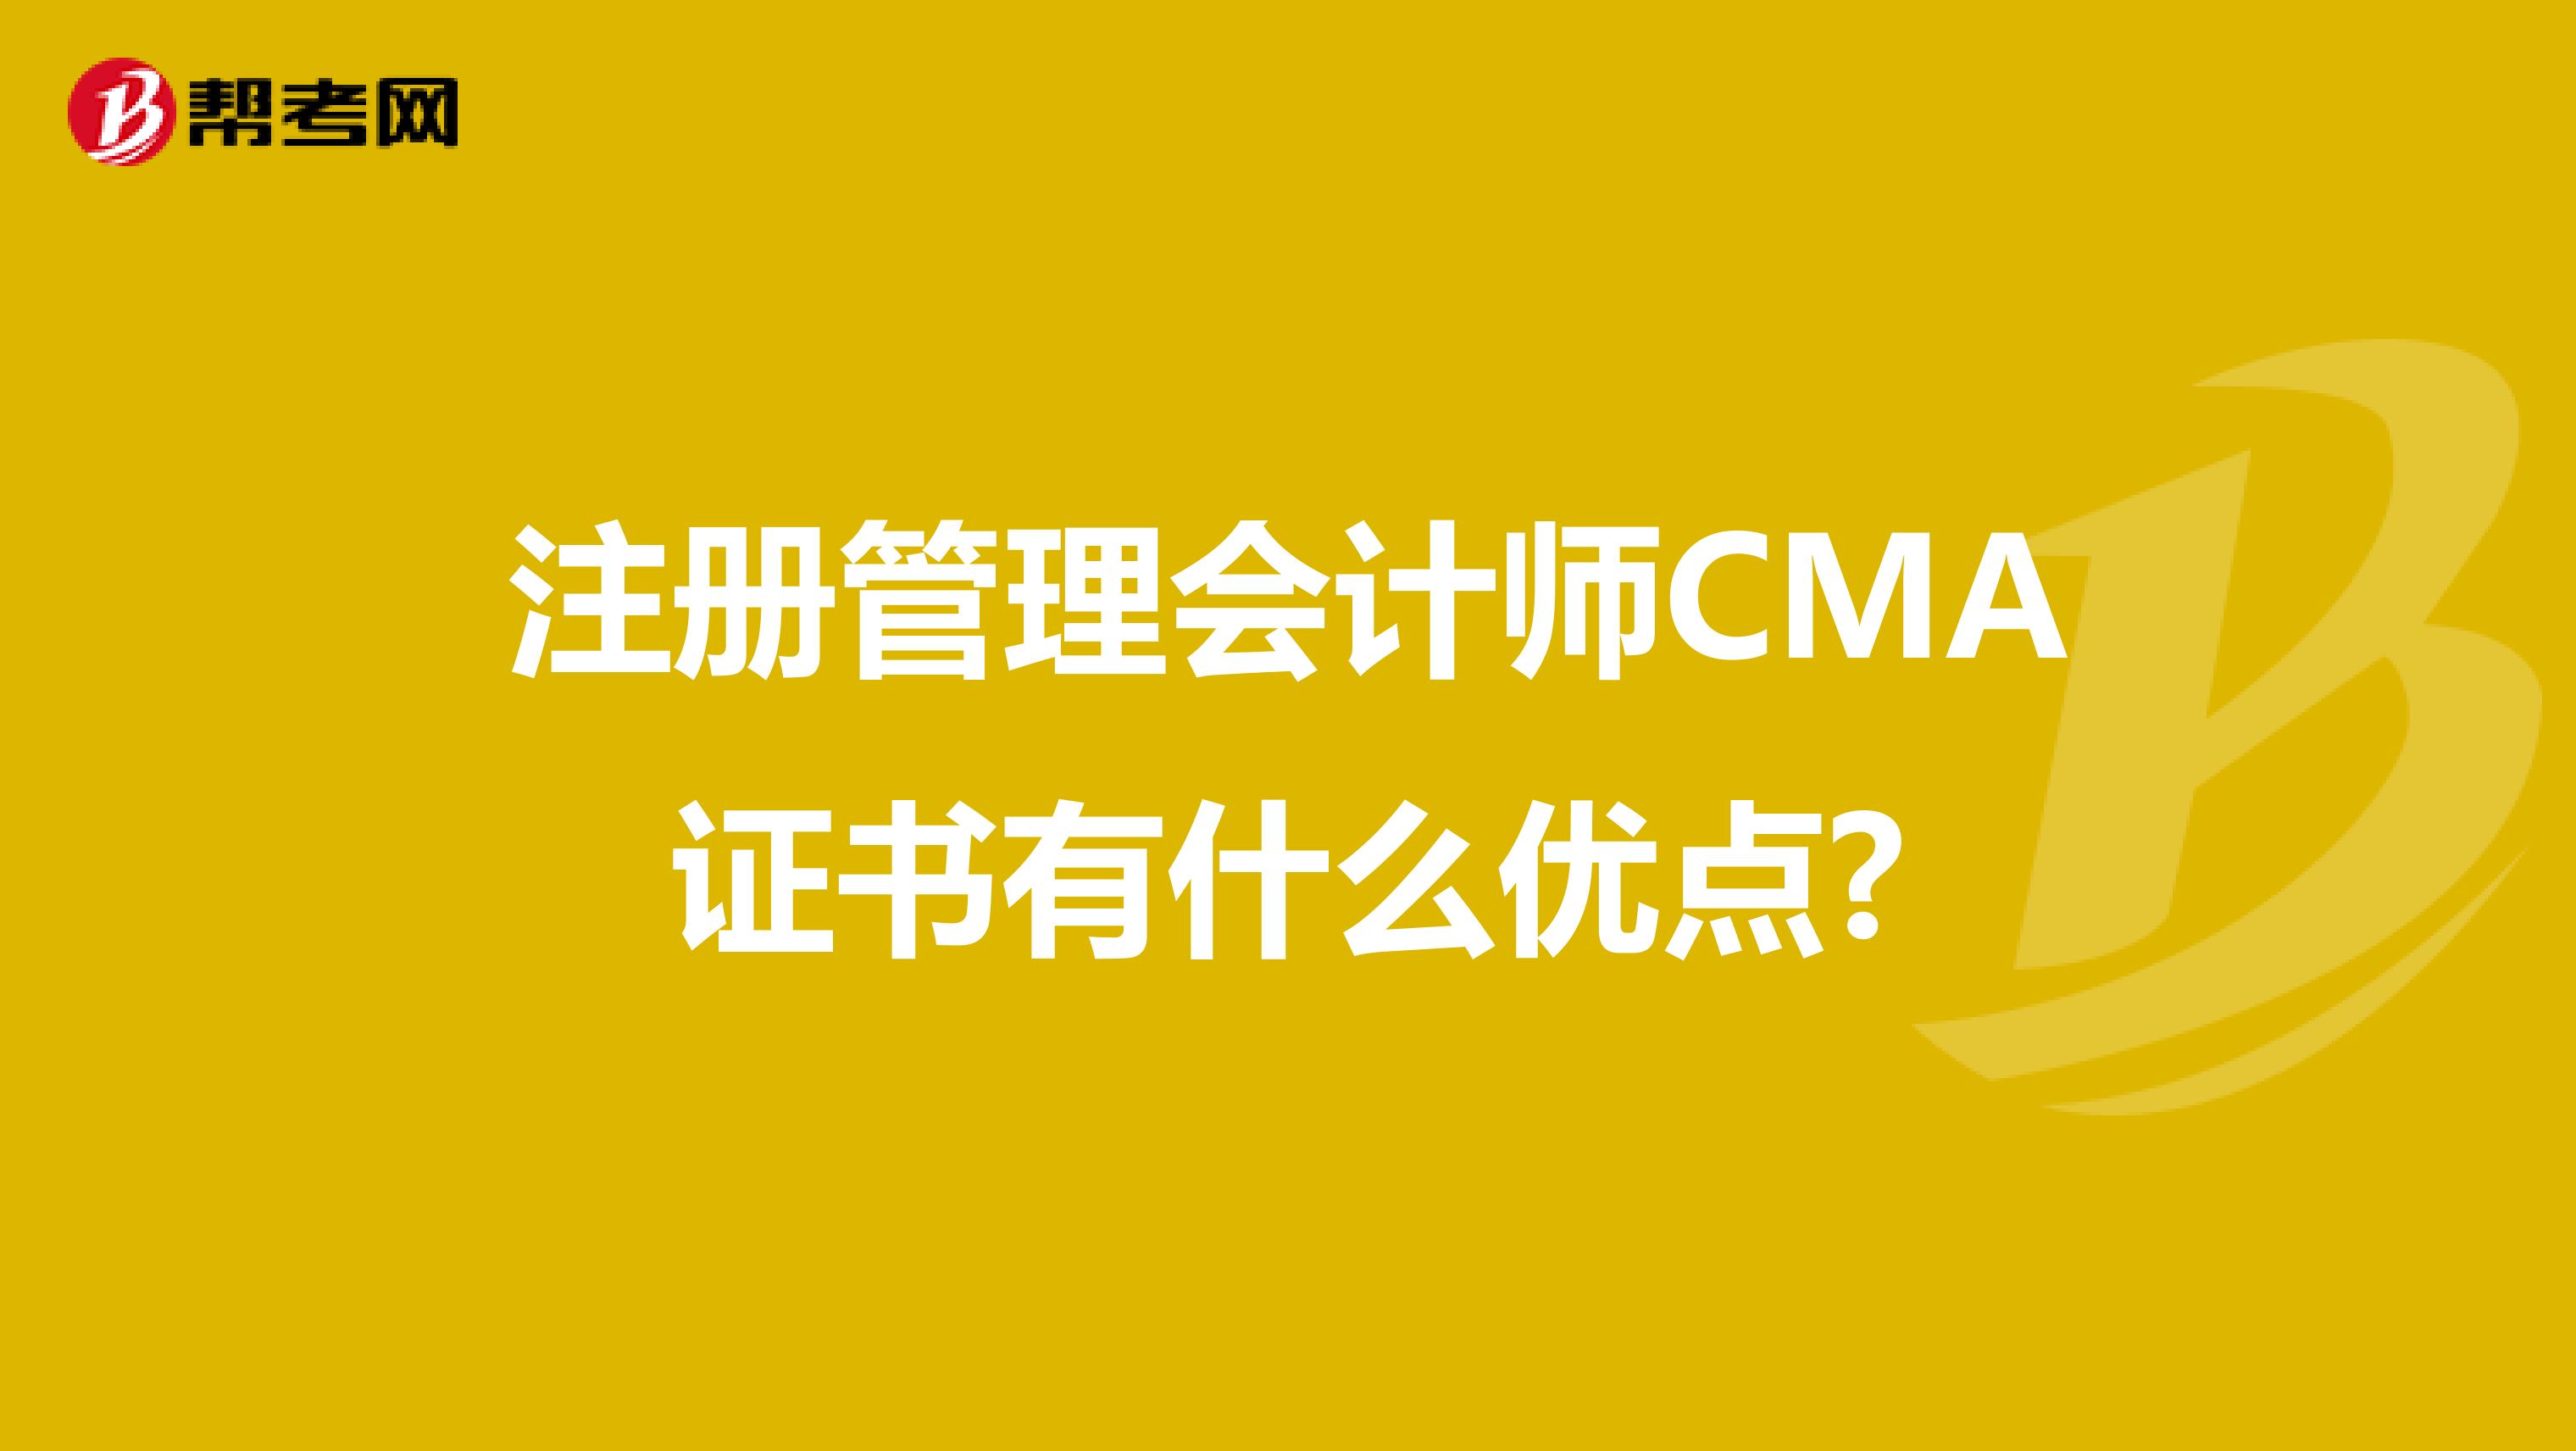 注册管理会计师CMA证书有什么优点?